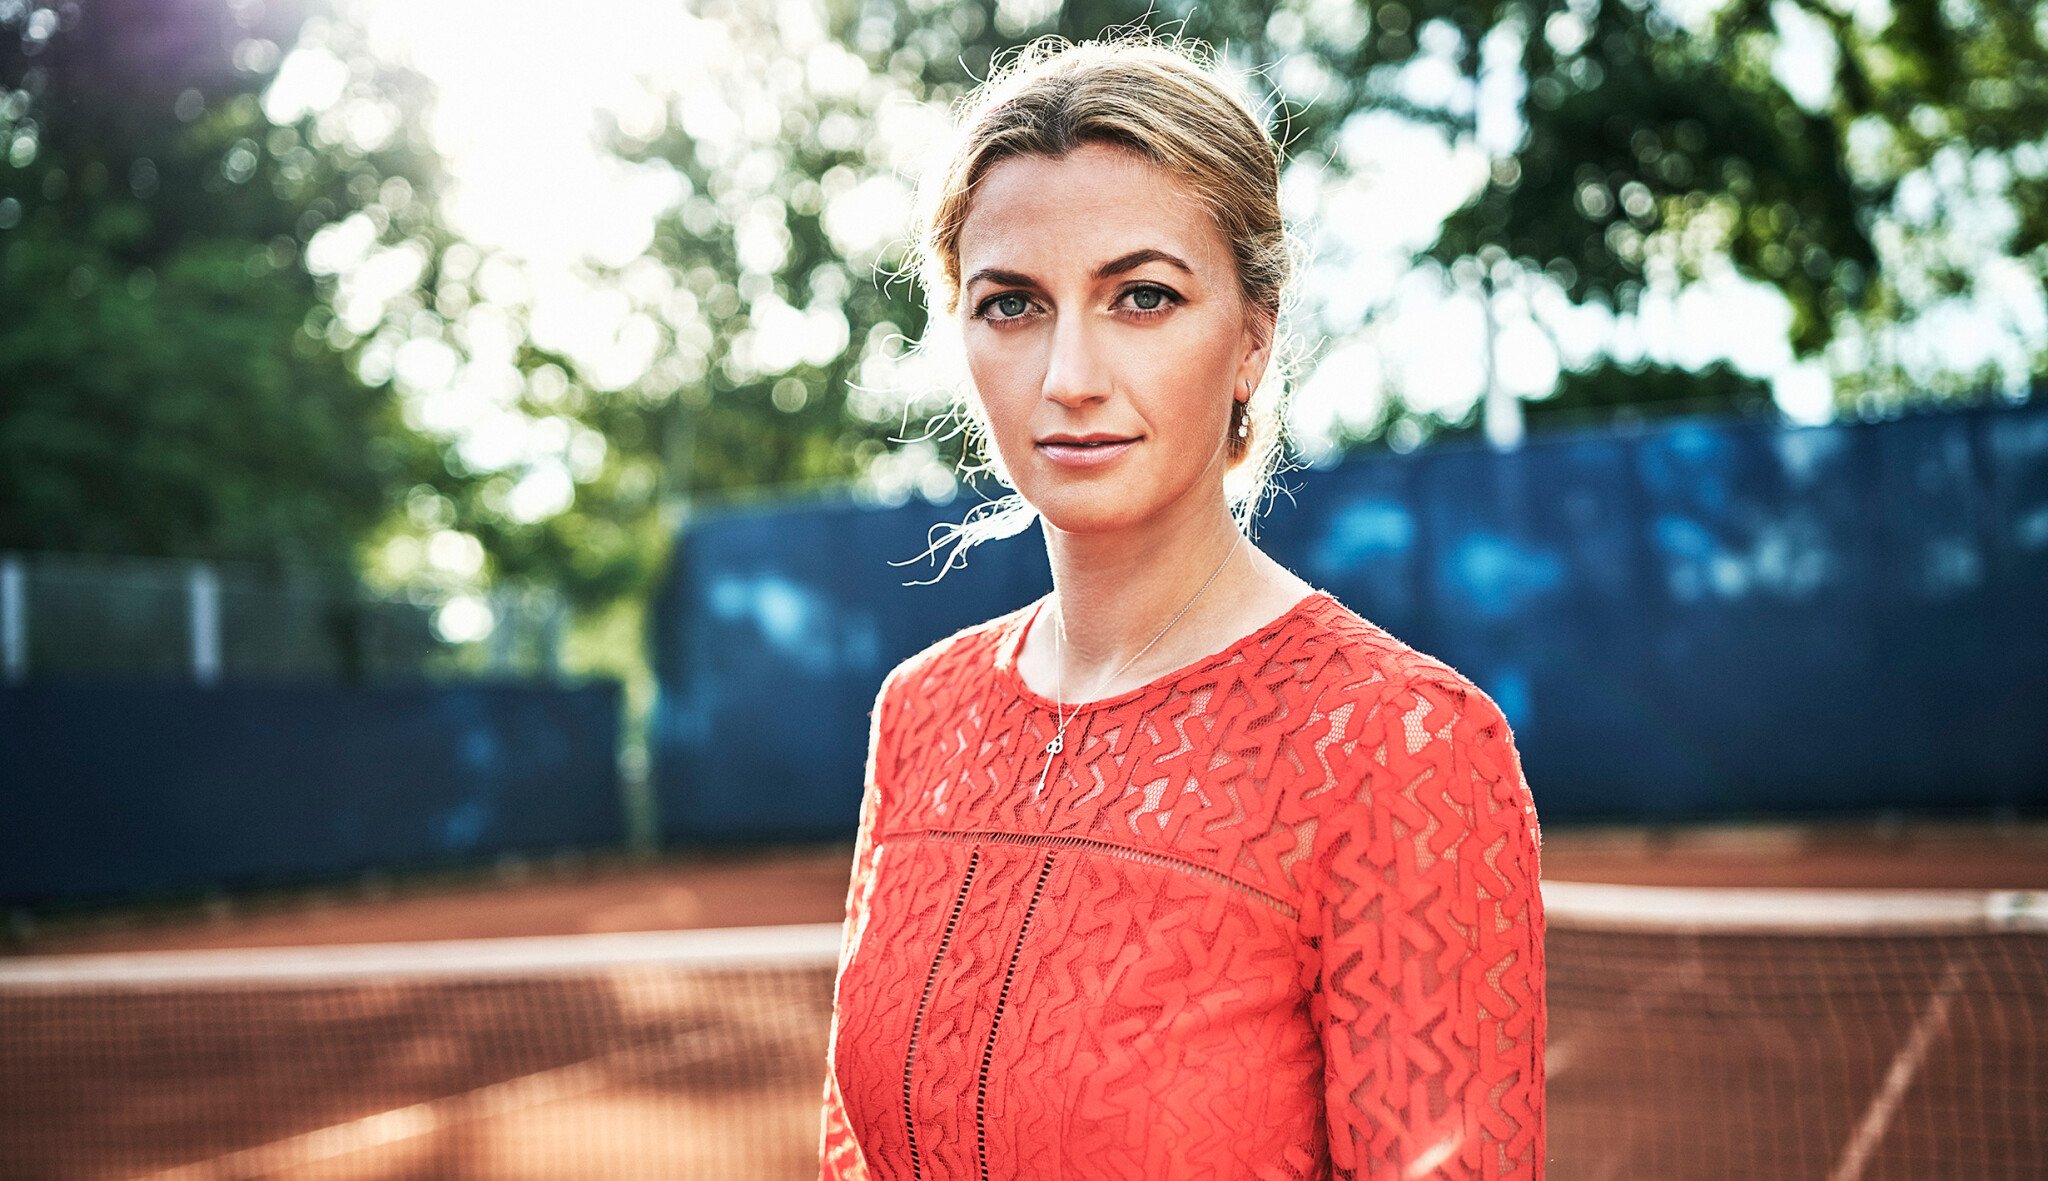 Druhé podání Petry K. Nejúspěšnější česká tenistka v nečekaně otevřeném rozhovoru